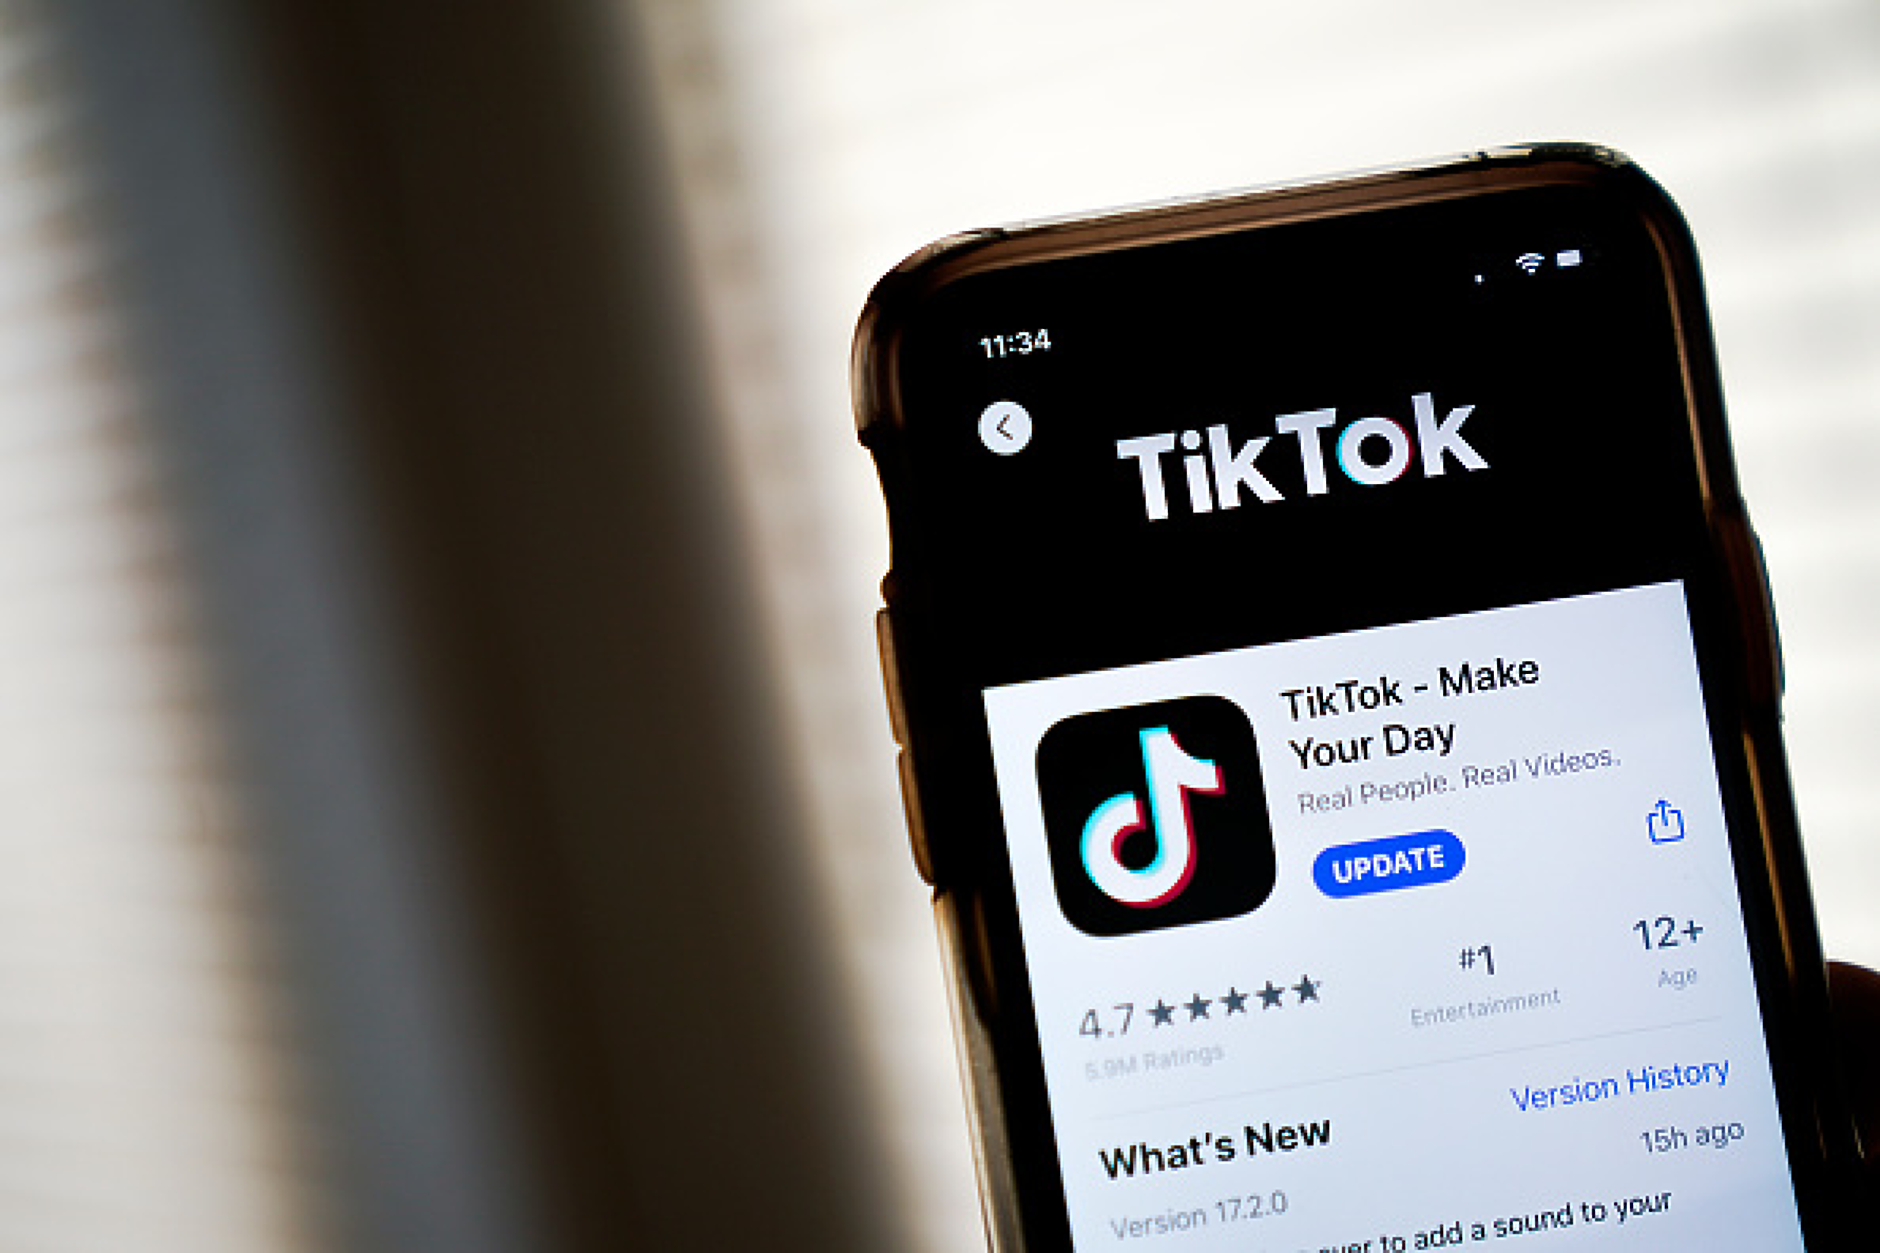 TikTok създава нов алгоритъм за потребителите си в САЩ, за да избегне забраната